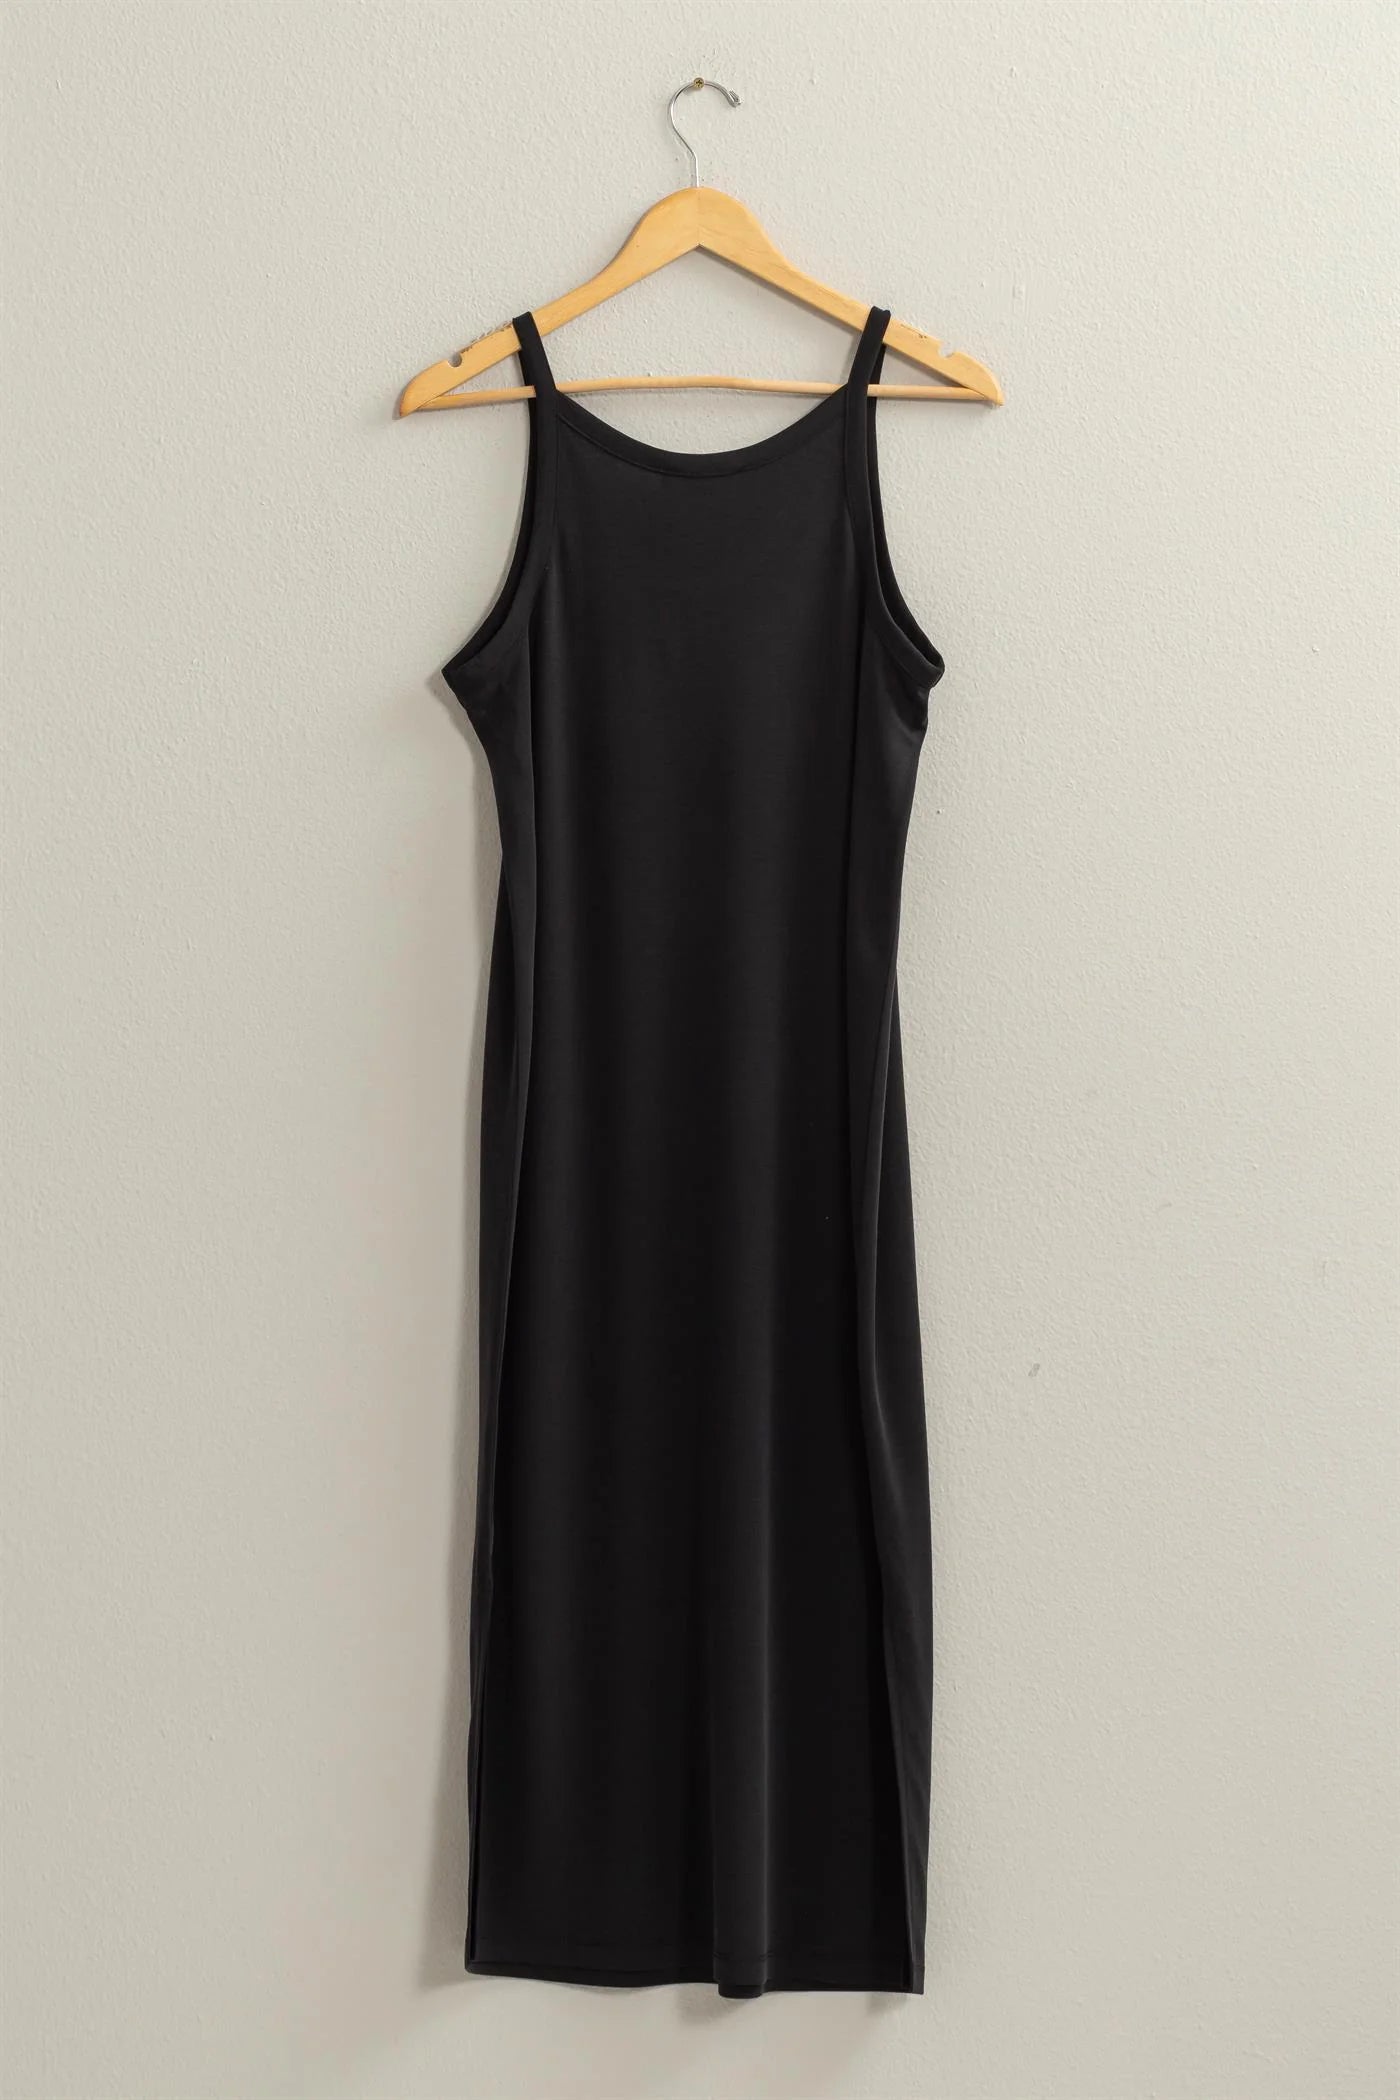 back full length view of birdie v neck midi dress, hanging on a hanger 